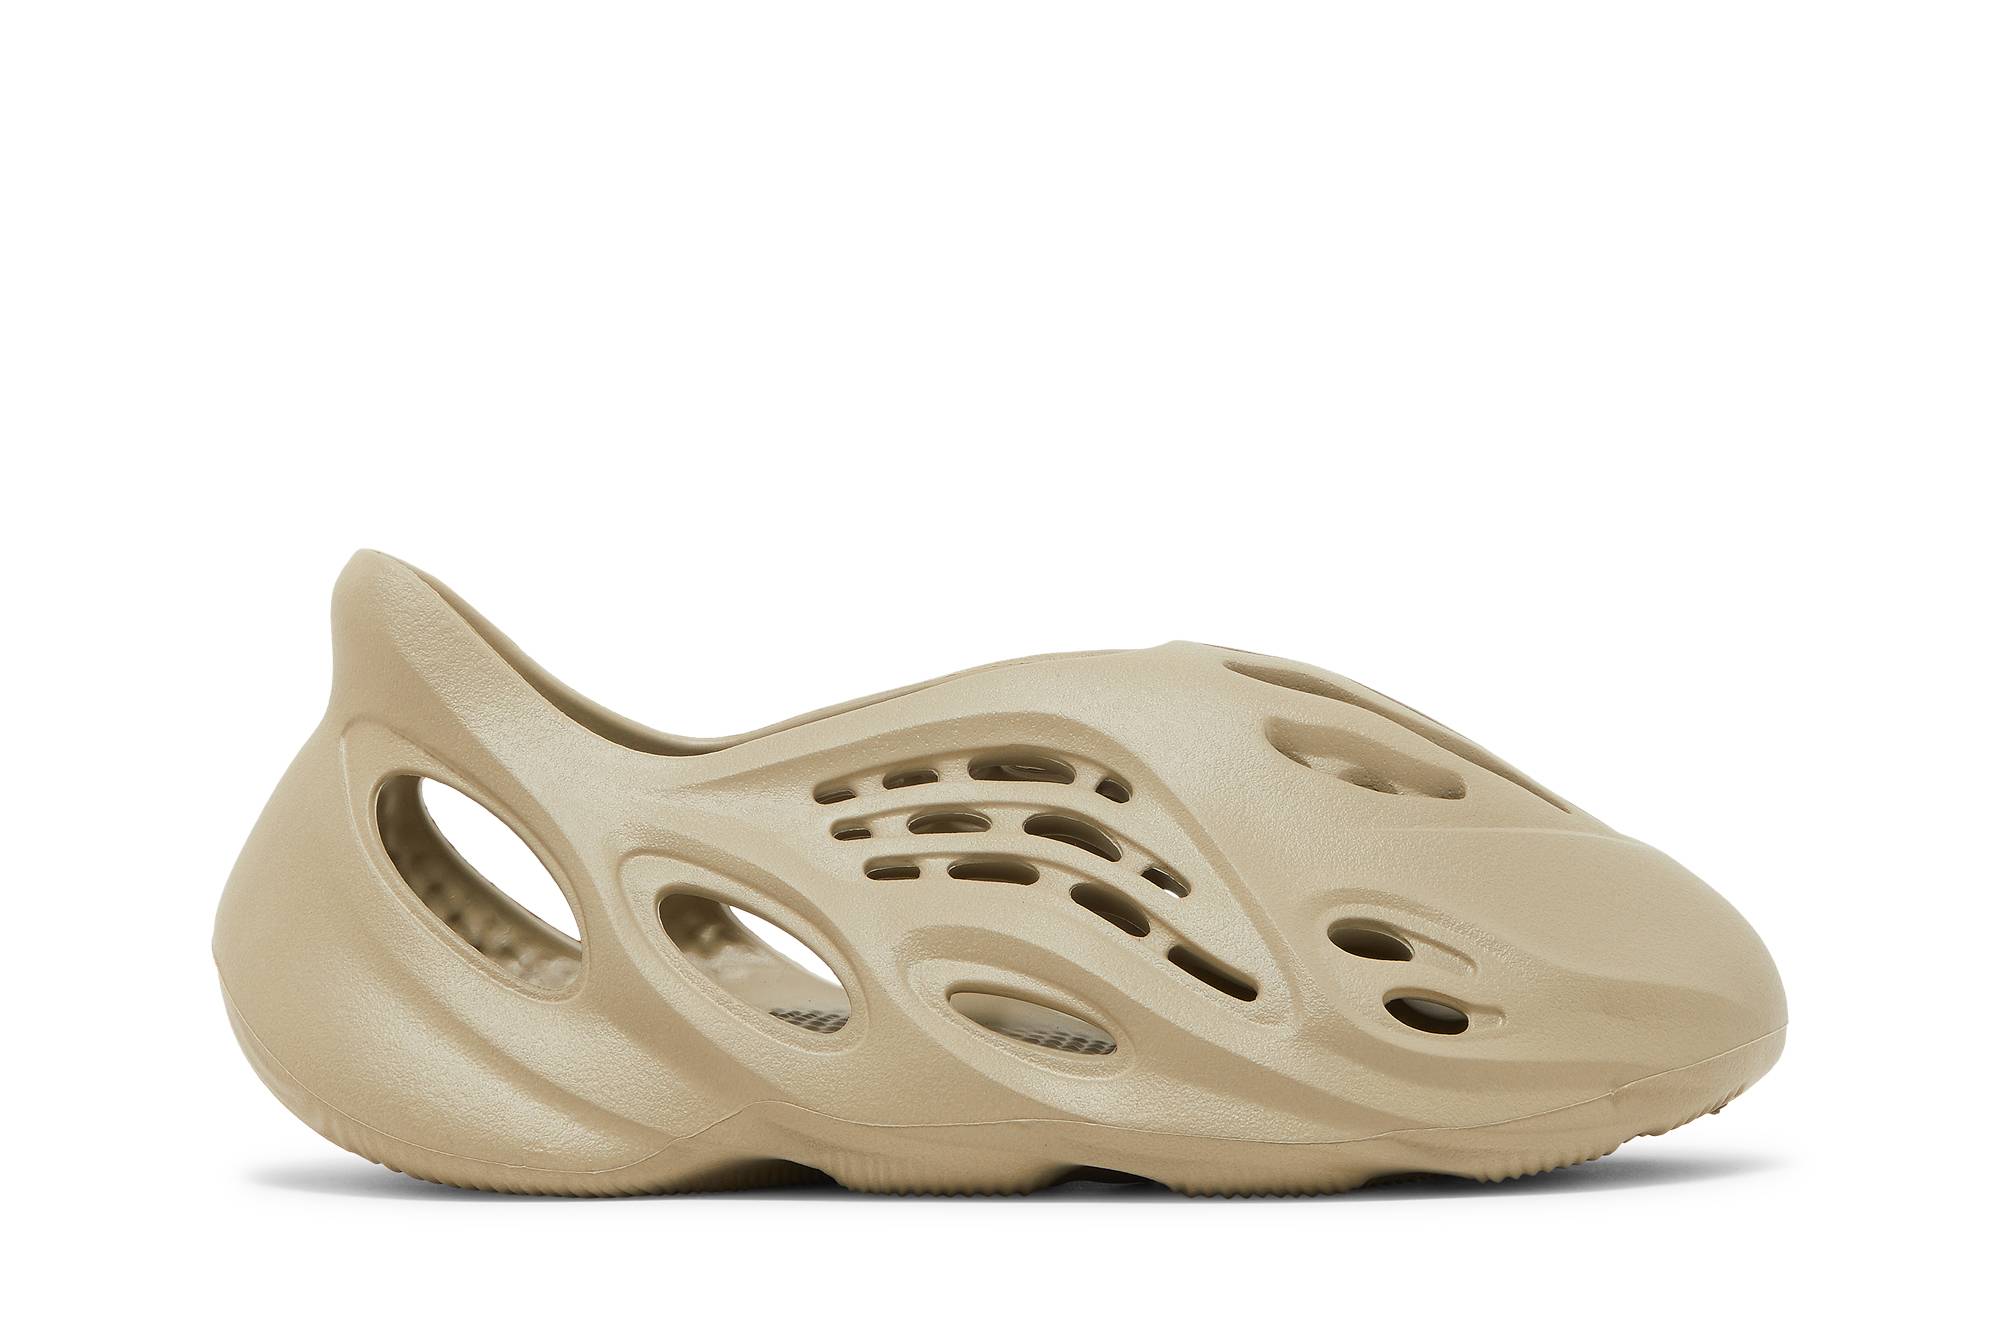 adidas Yeezy Foam Runner 'Stone Salt' GV6840 Novelship